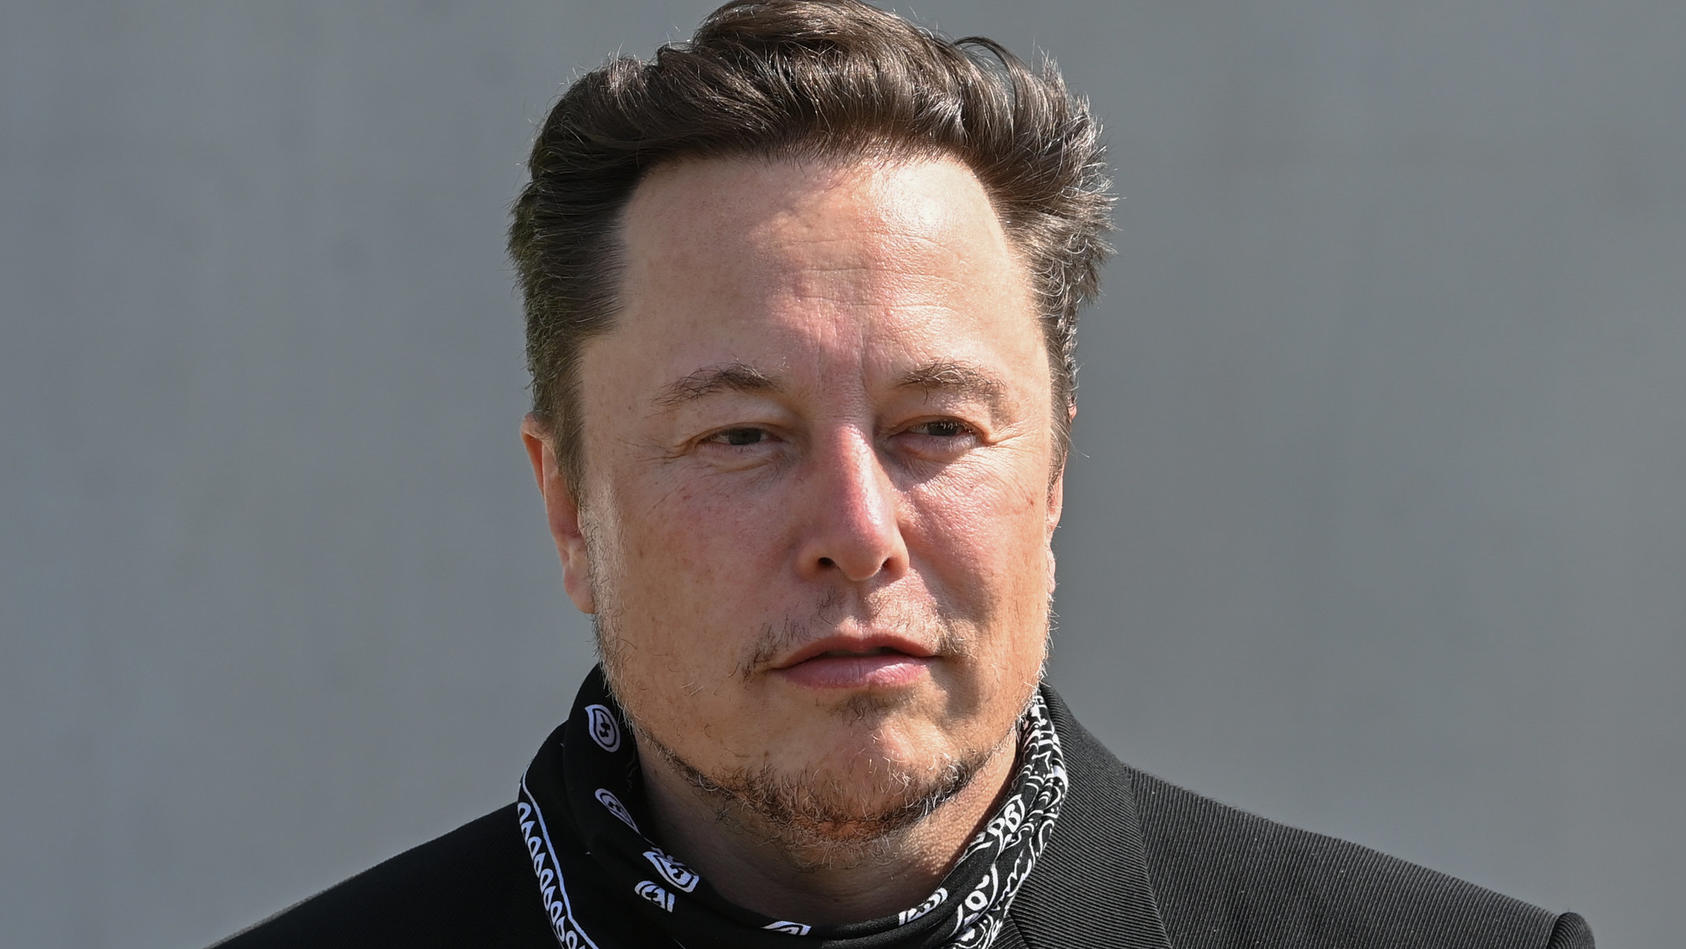 ARCHIV - 13.08.2021, Brandenburg, Grünheide: Elon Musk, Tesla-Chef, steht bei einem Pressetermin auf dem Gelände der Tesla Gigafactory. Elon Musks Vorgehensweise bei der geplanten Übernahme von Twitter hat eine Aktionärsklage gegen ihn und das Untern